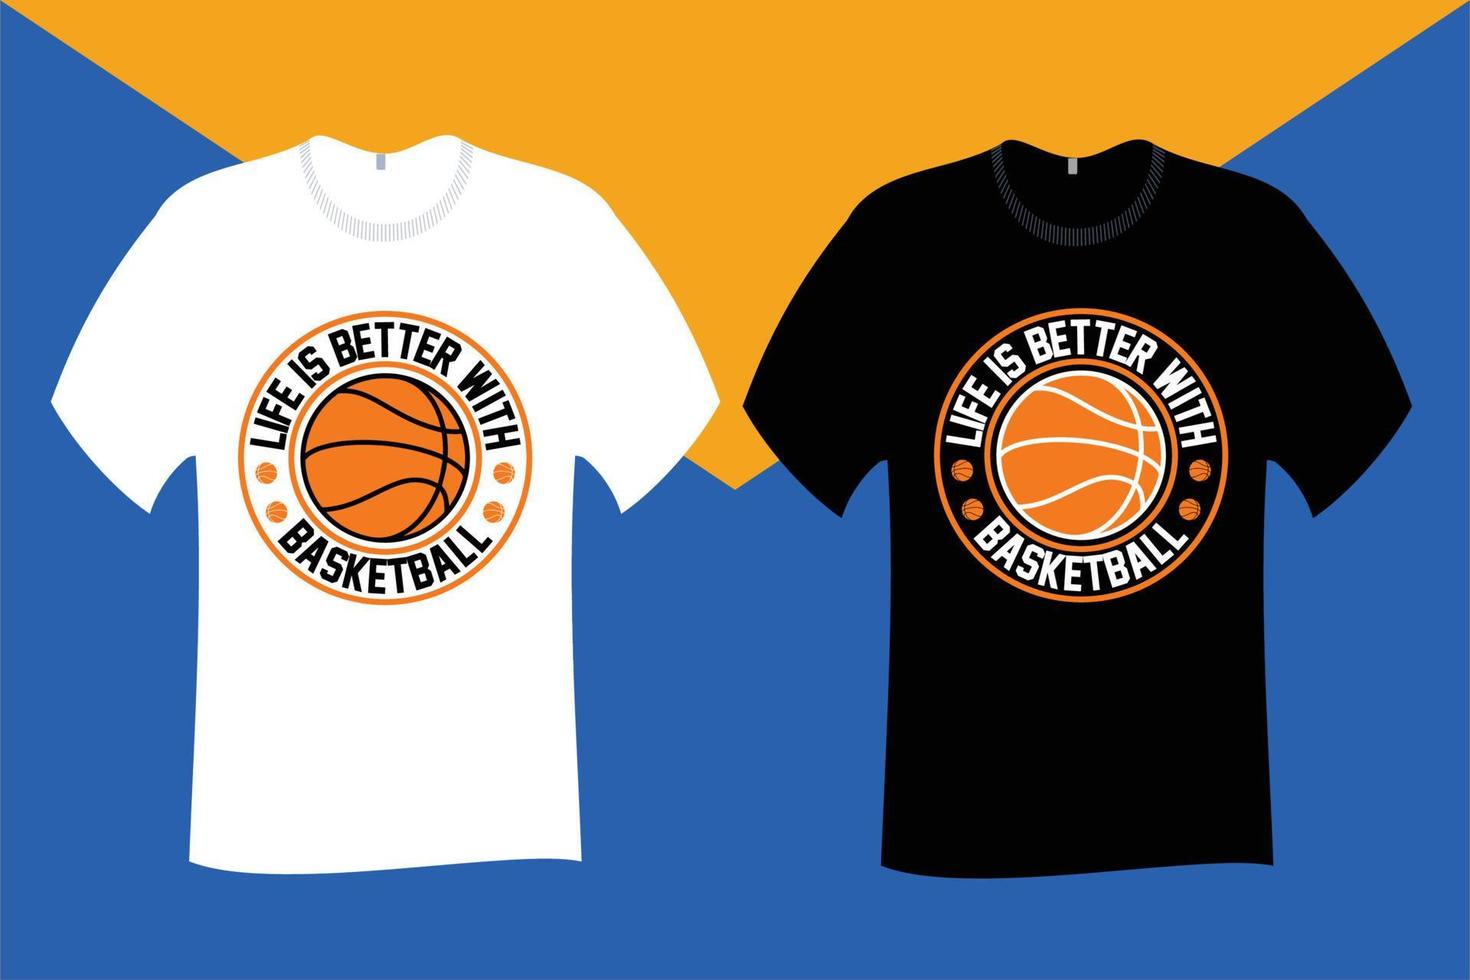 leven is beter met basketbal t overhemd ontwerp vector